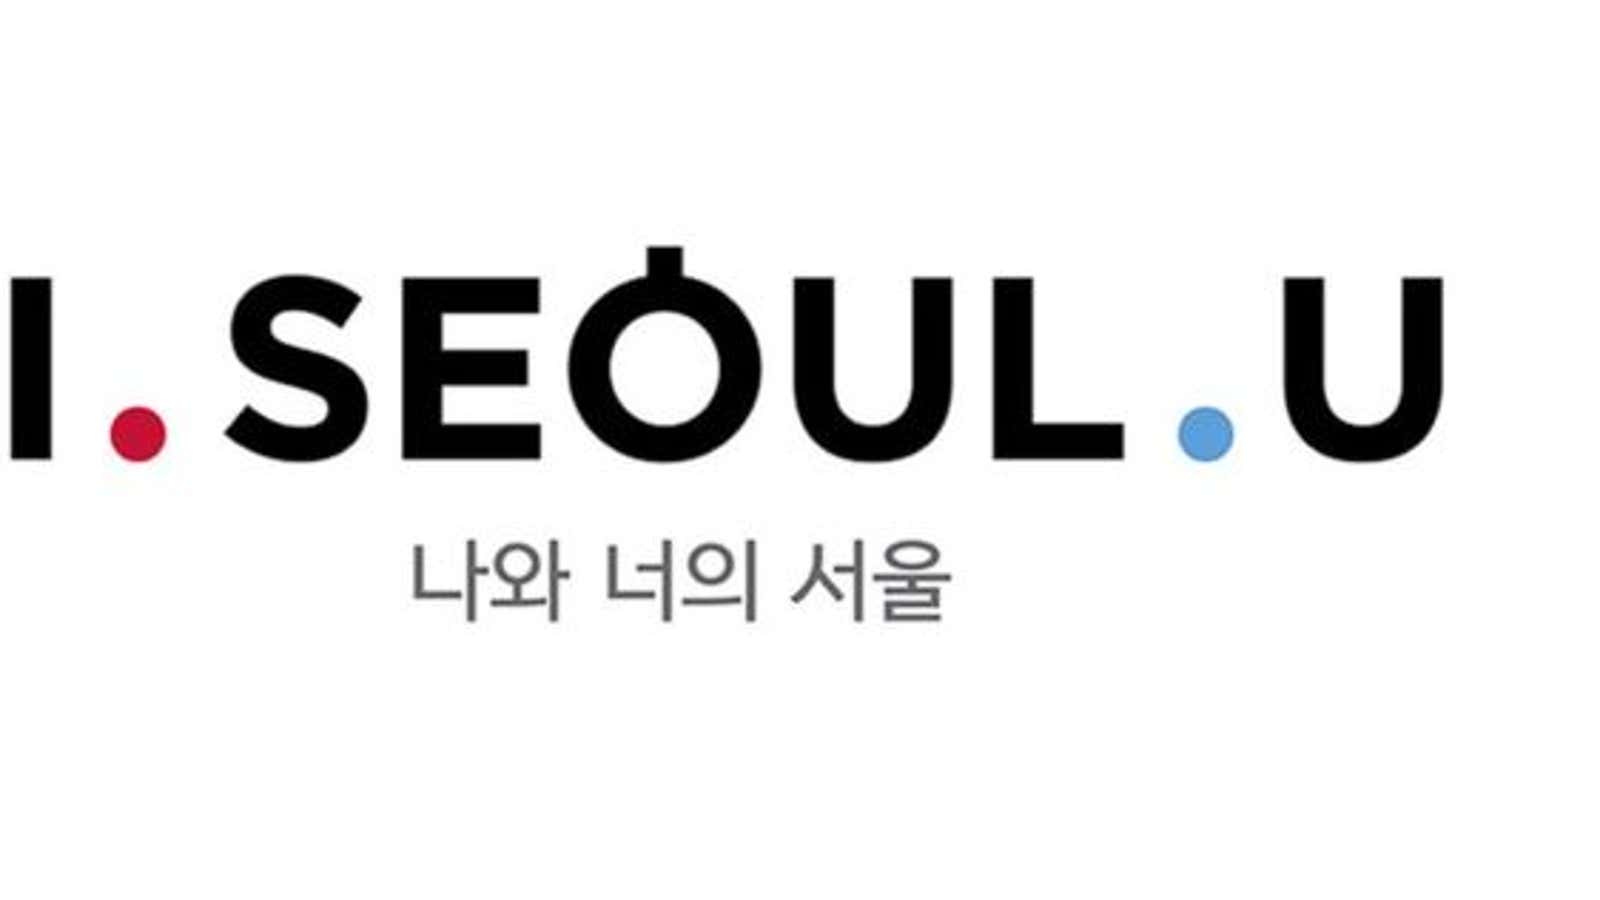 Korea’s newest slogan is Seoul stupid